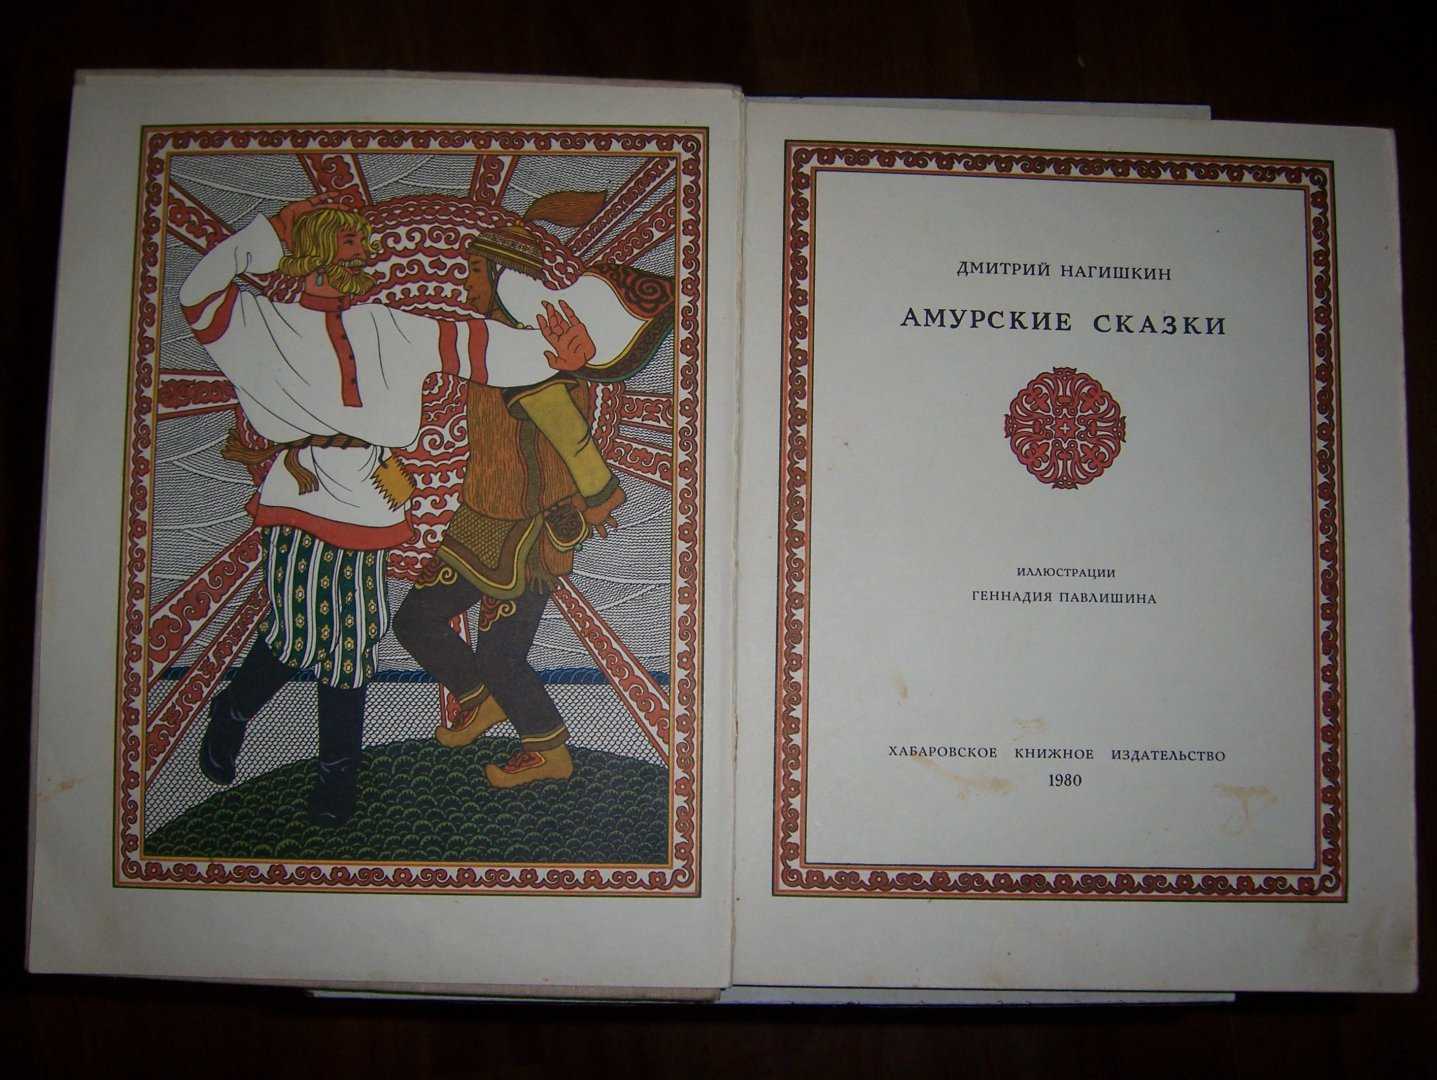 Книга Амурские сказки Нагишкин